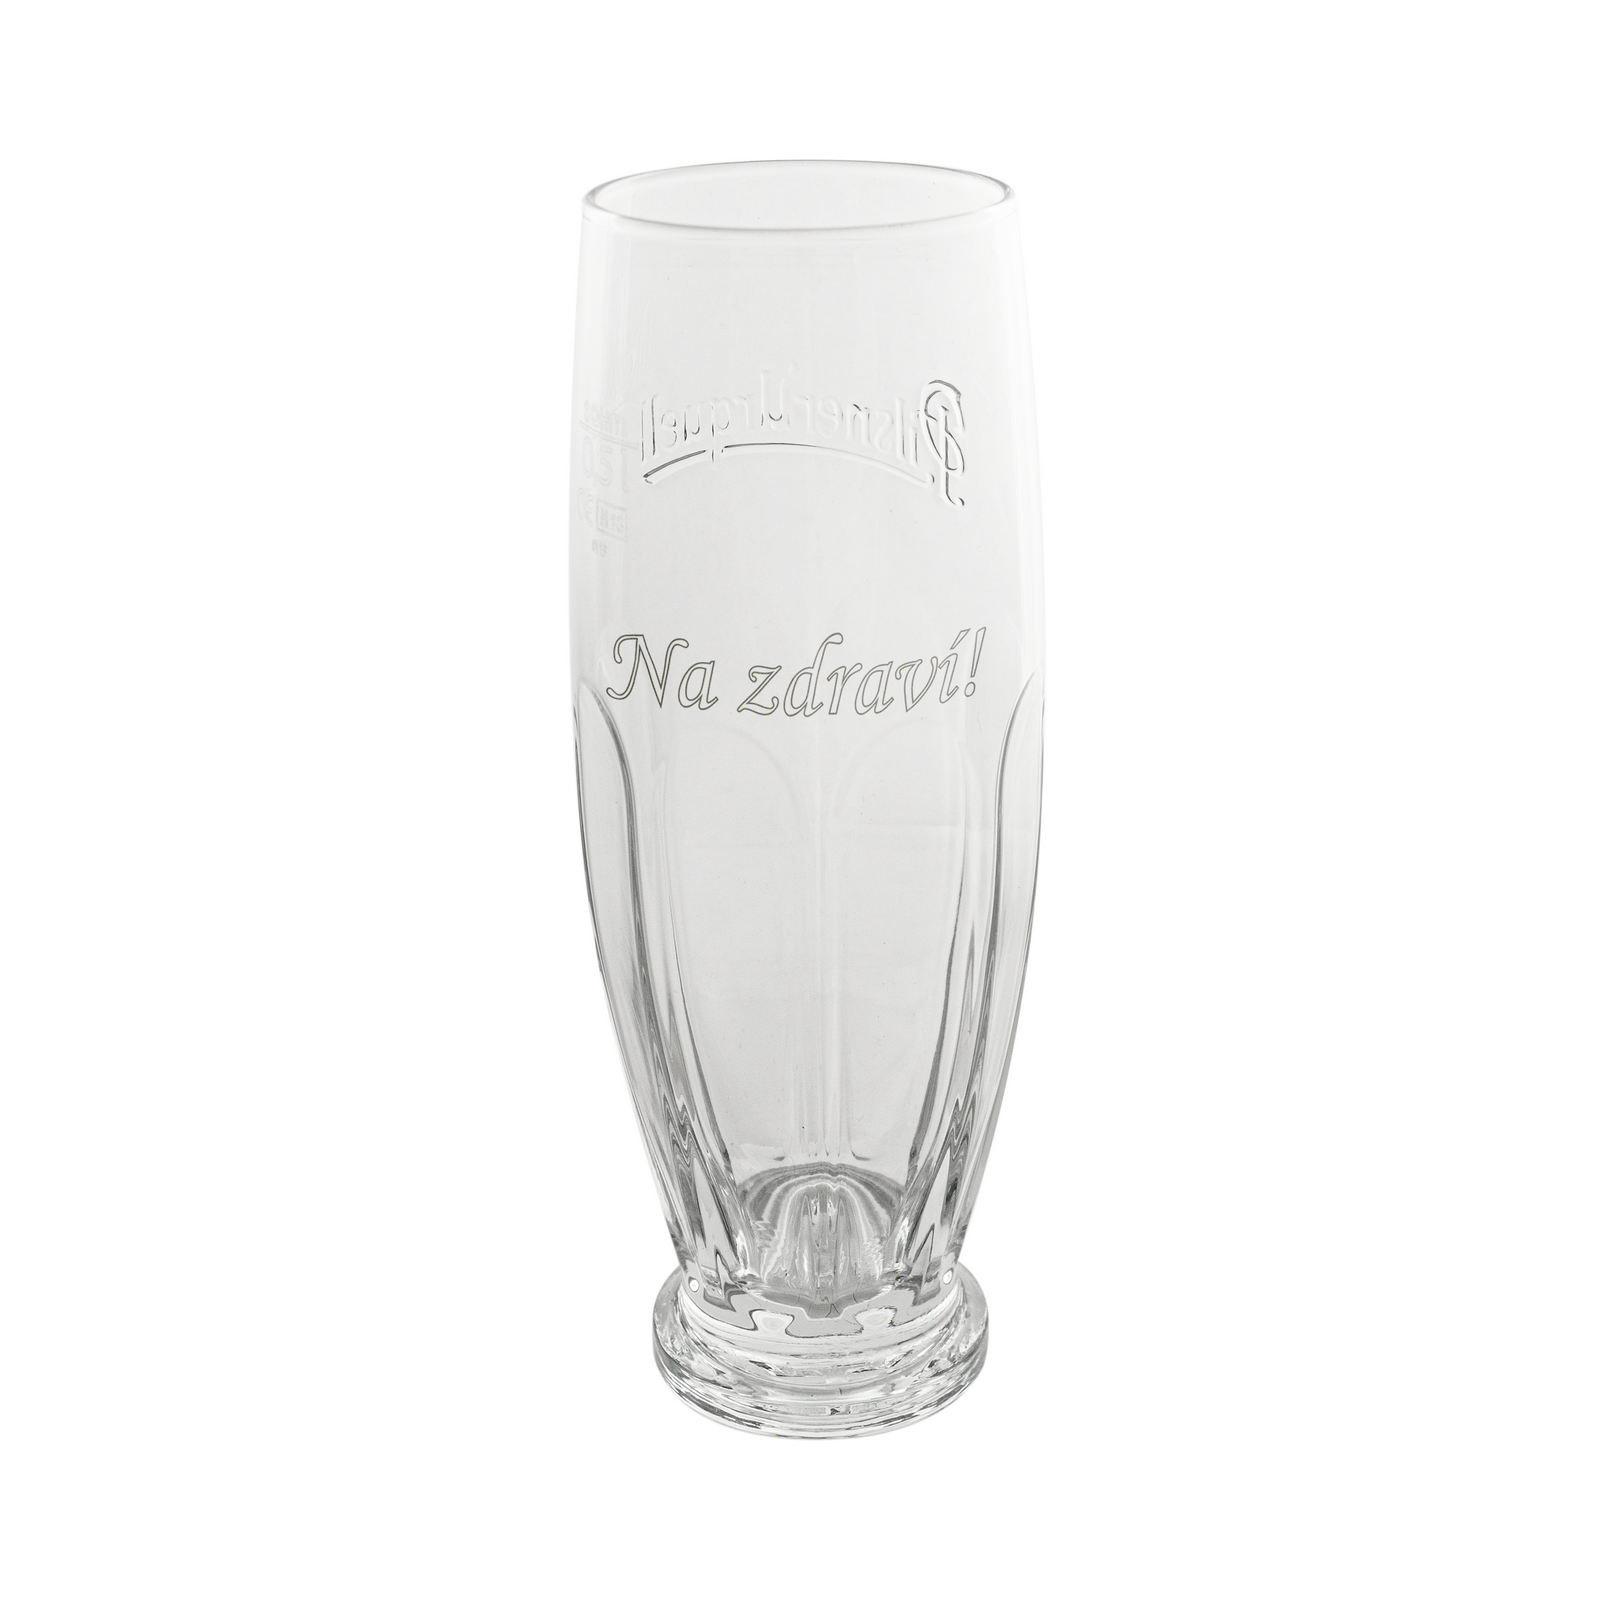 Pilsner Urquell Original 0.5 l glass with inscription